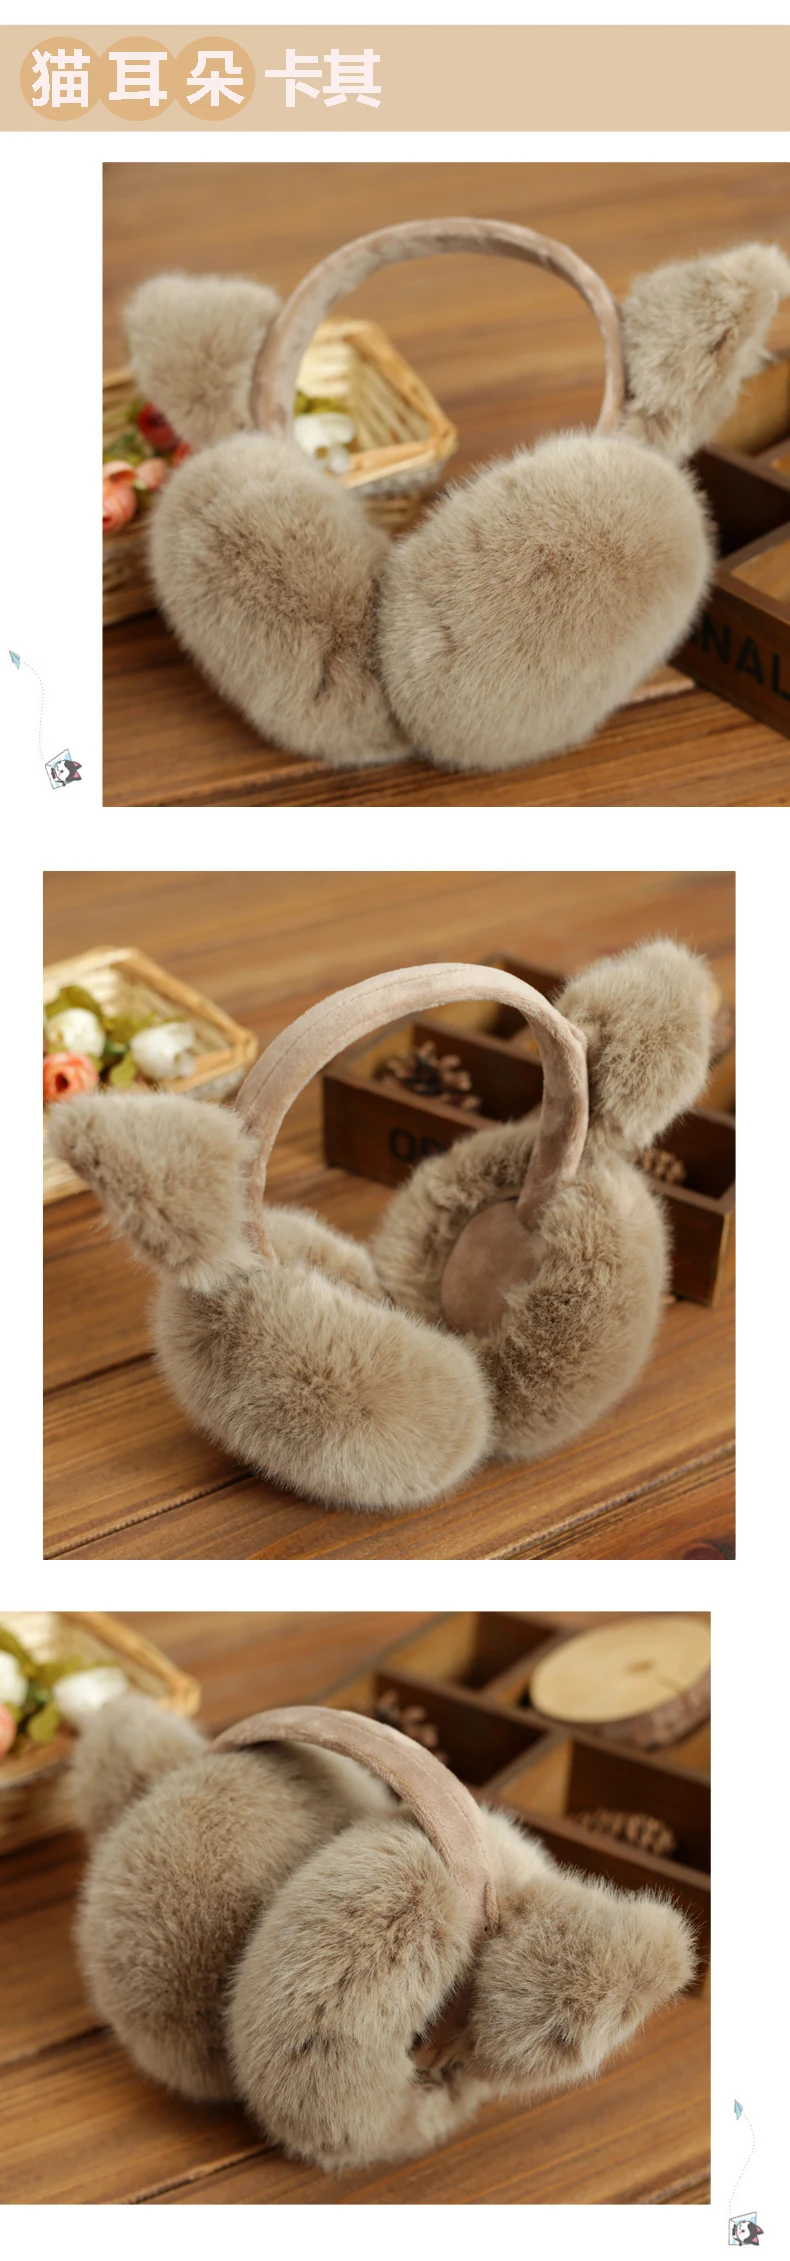 Хорошее качество Rabbite меховые наушники в Корейском стиле зимняя термальная уха Обложка для женщин Мужчины многоцветный Кот форма наушники